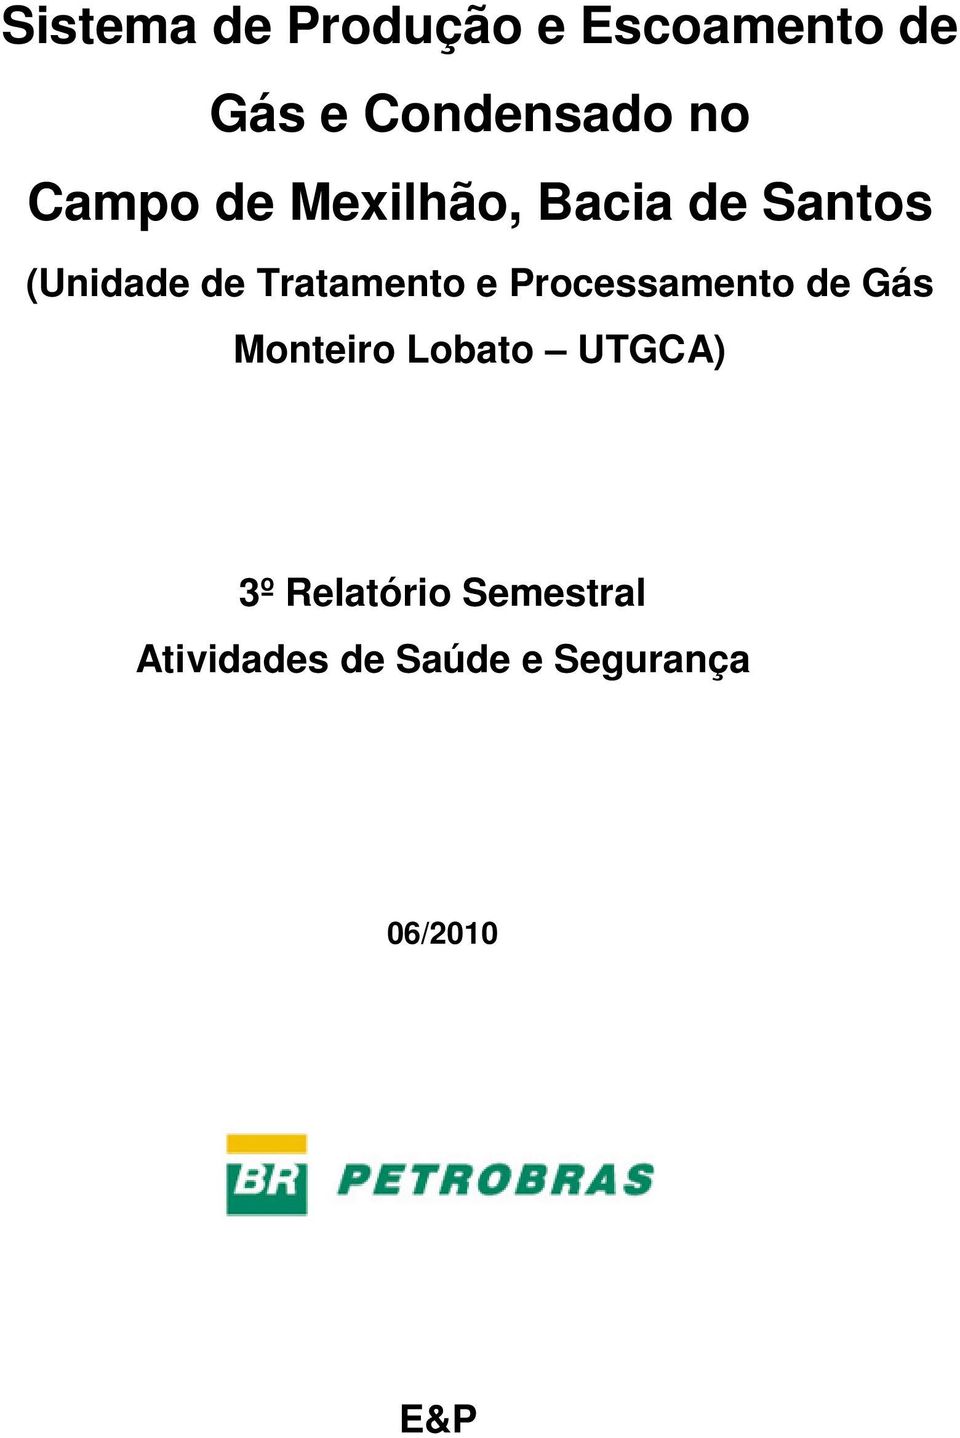 Tratamento e Processamento de Gás Monteiro Lobato UTGCA)